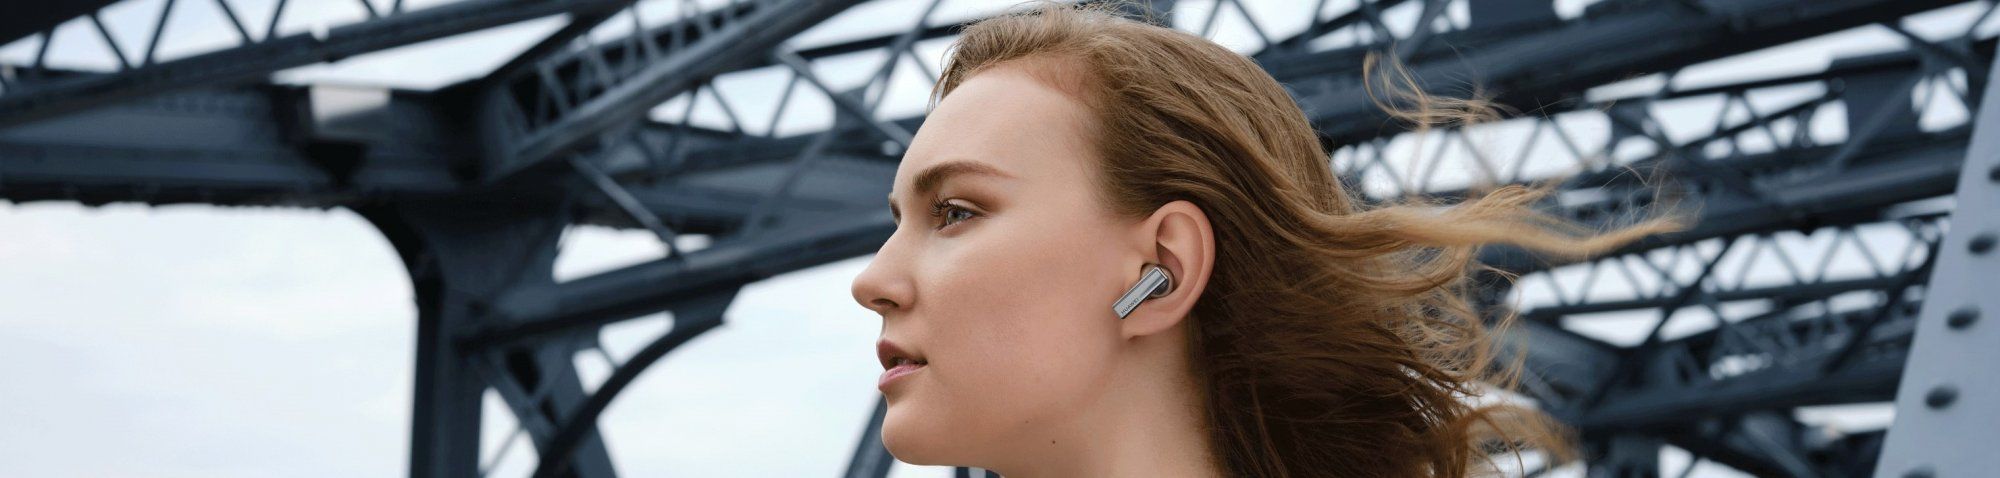 ultramoderní minimalistická bluetooth 5.2 sluchátka bezdrátová huawei freebuds pro 7h výdrž na nabití anc technologie potlačení hluku detekce v uších nabíjecí box systém 3 mikrofonů potlačující hluky při handsfree pohodlná v uších